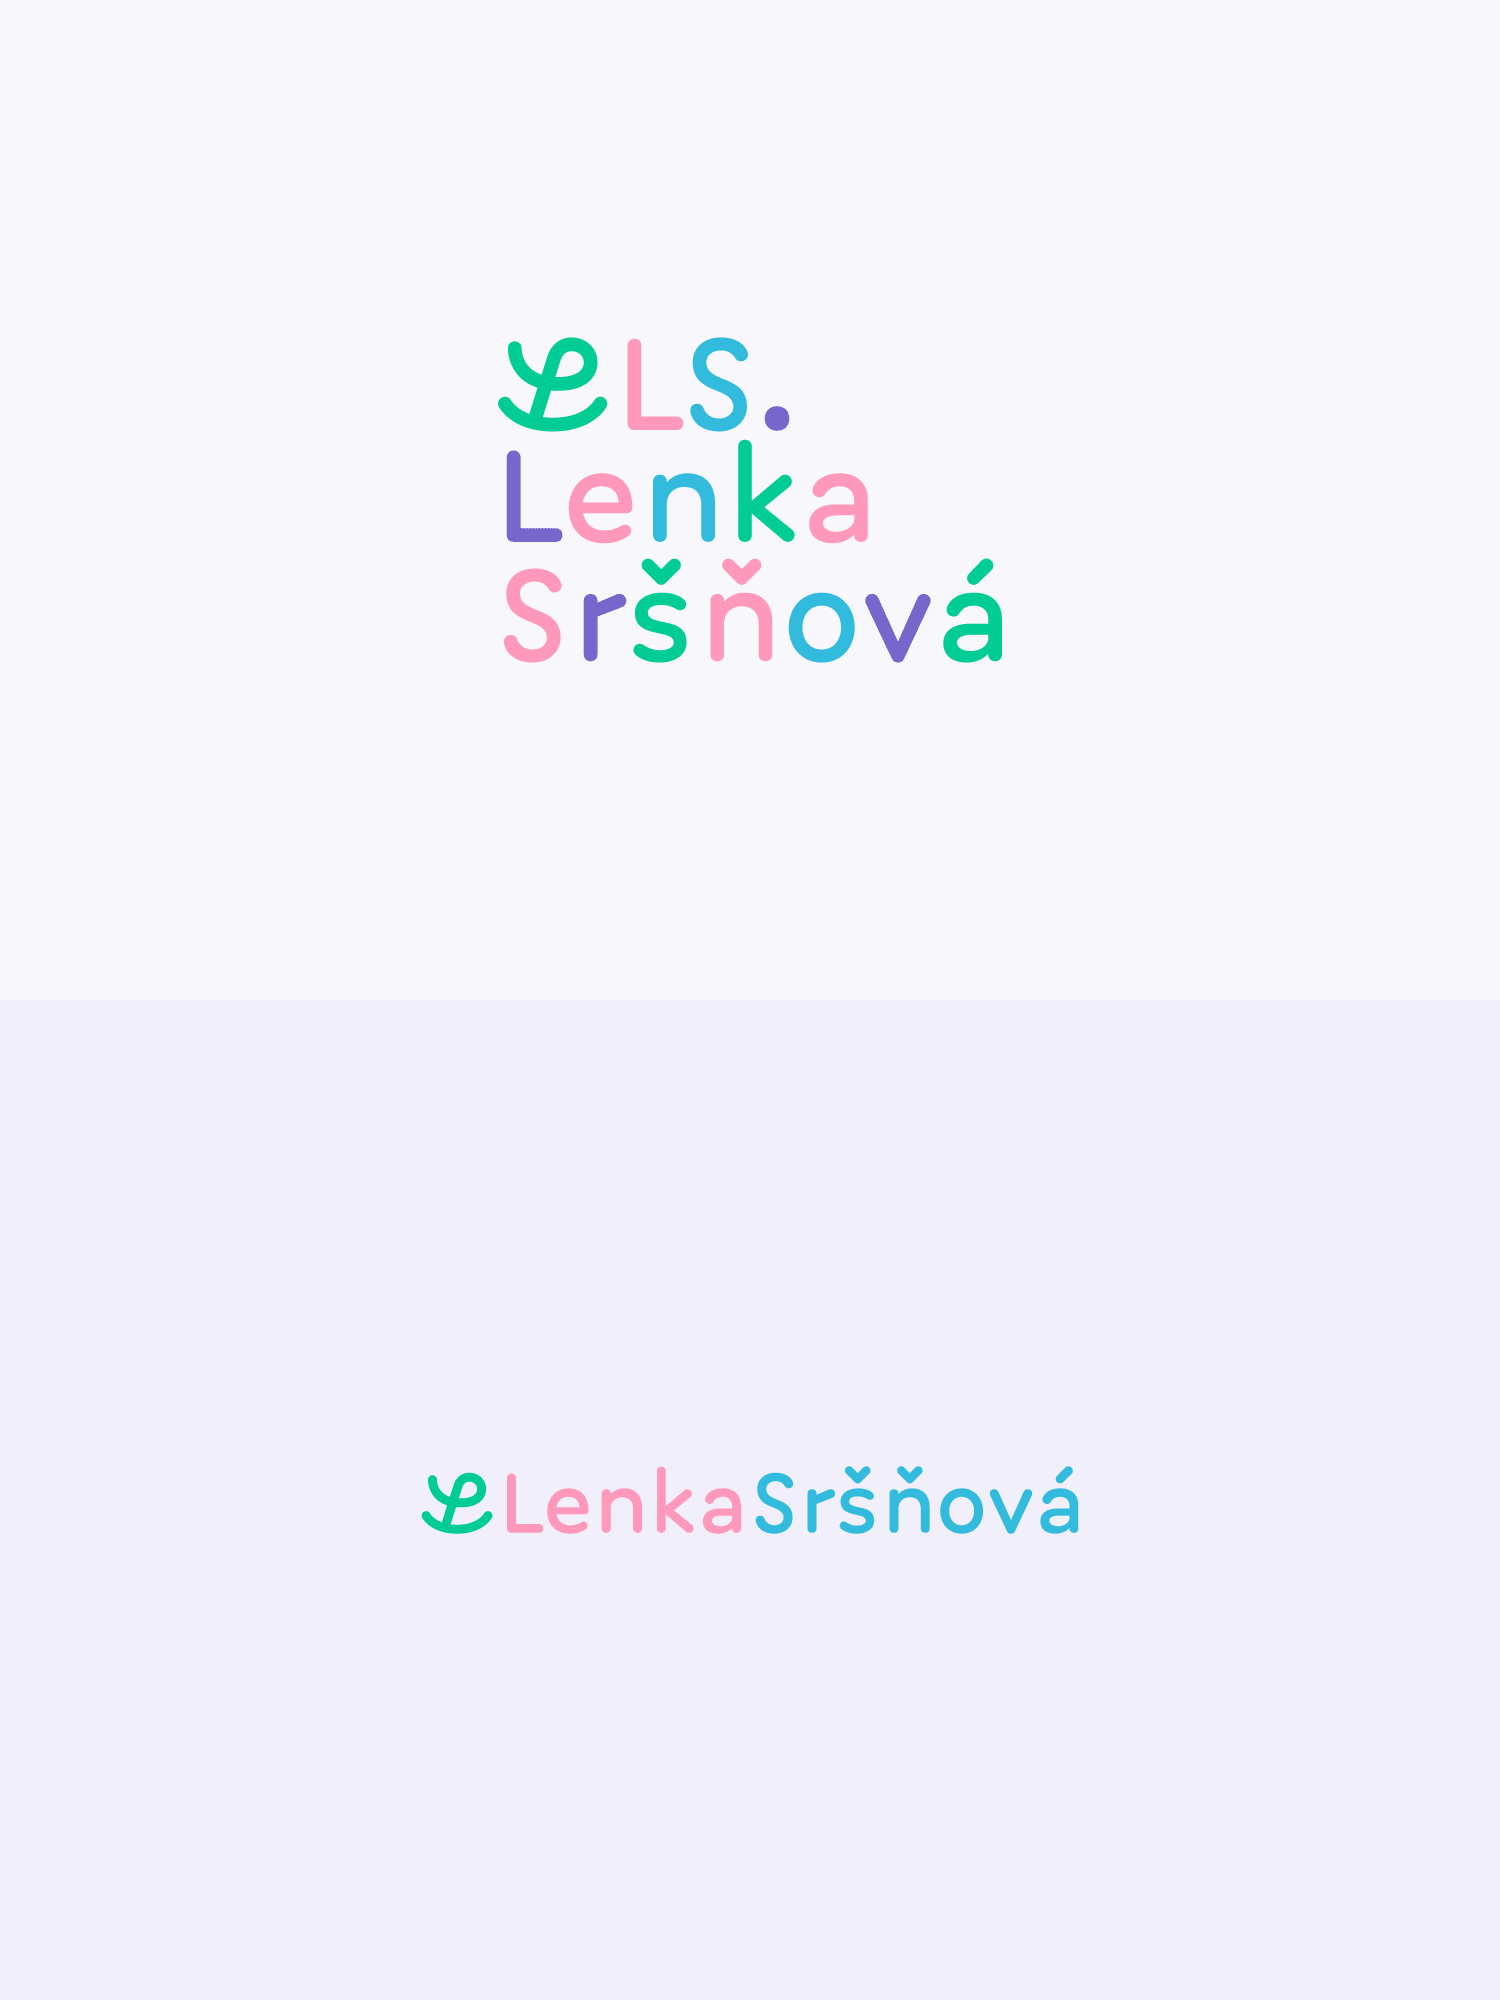 Branding: Lenka Sršňová